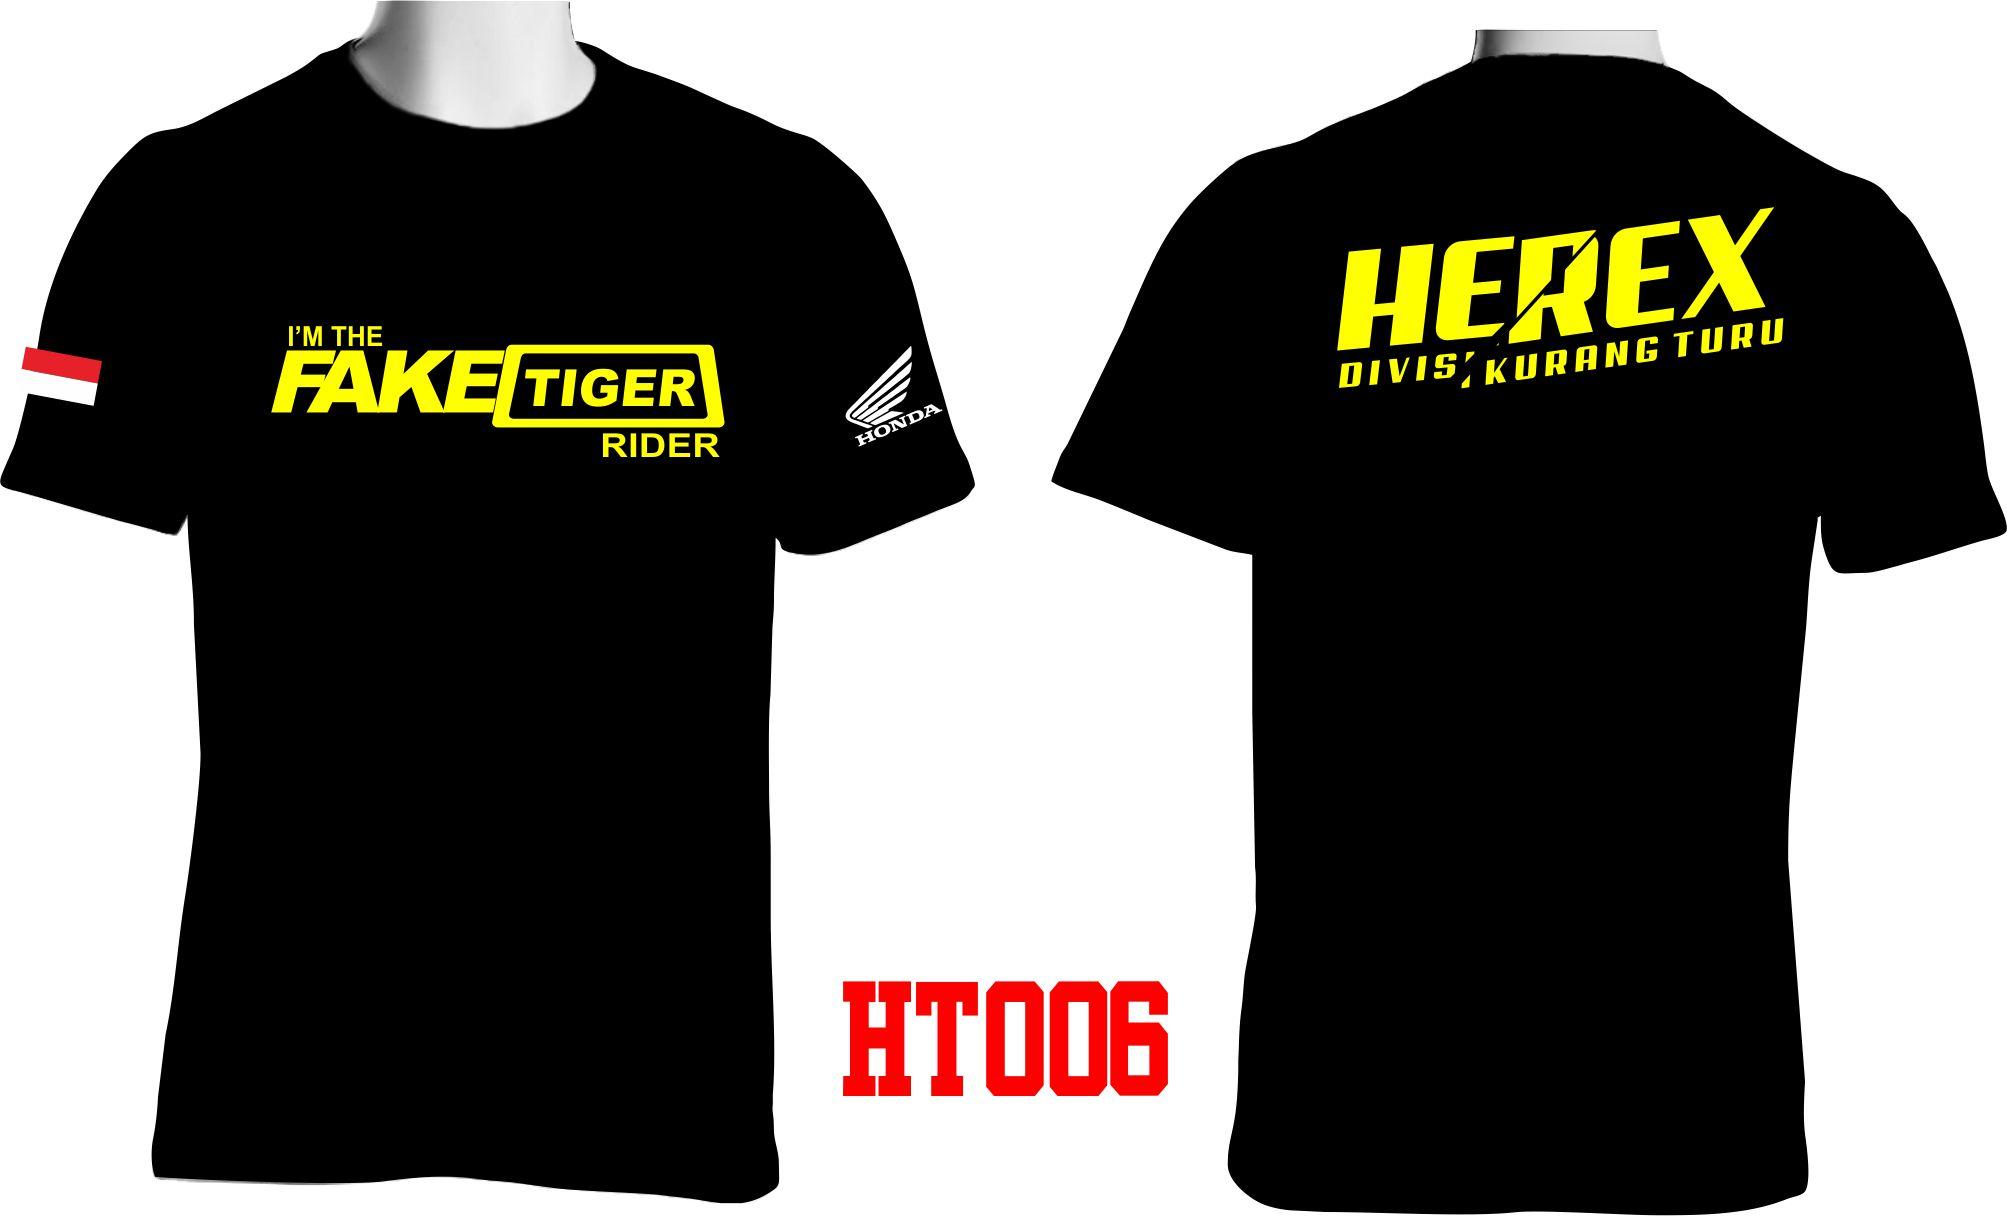 Kaos Motor Honda Tiger Herex Membeli Jualan Online T Shirt Dengan Harga Murah Lazada Indonesia